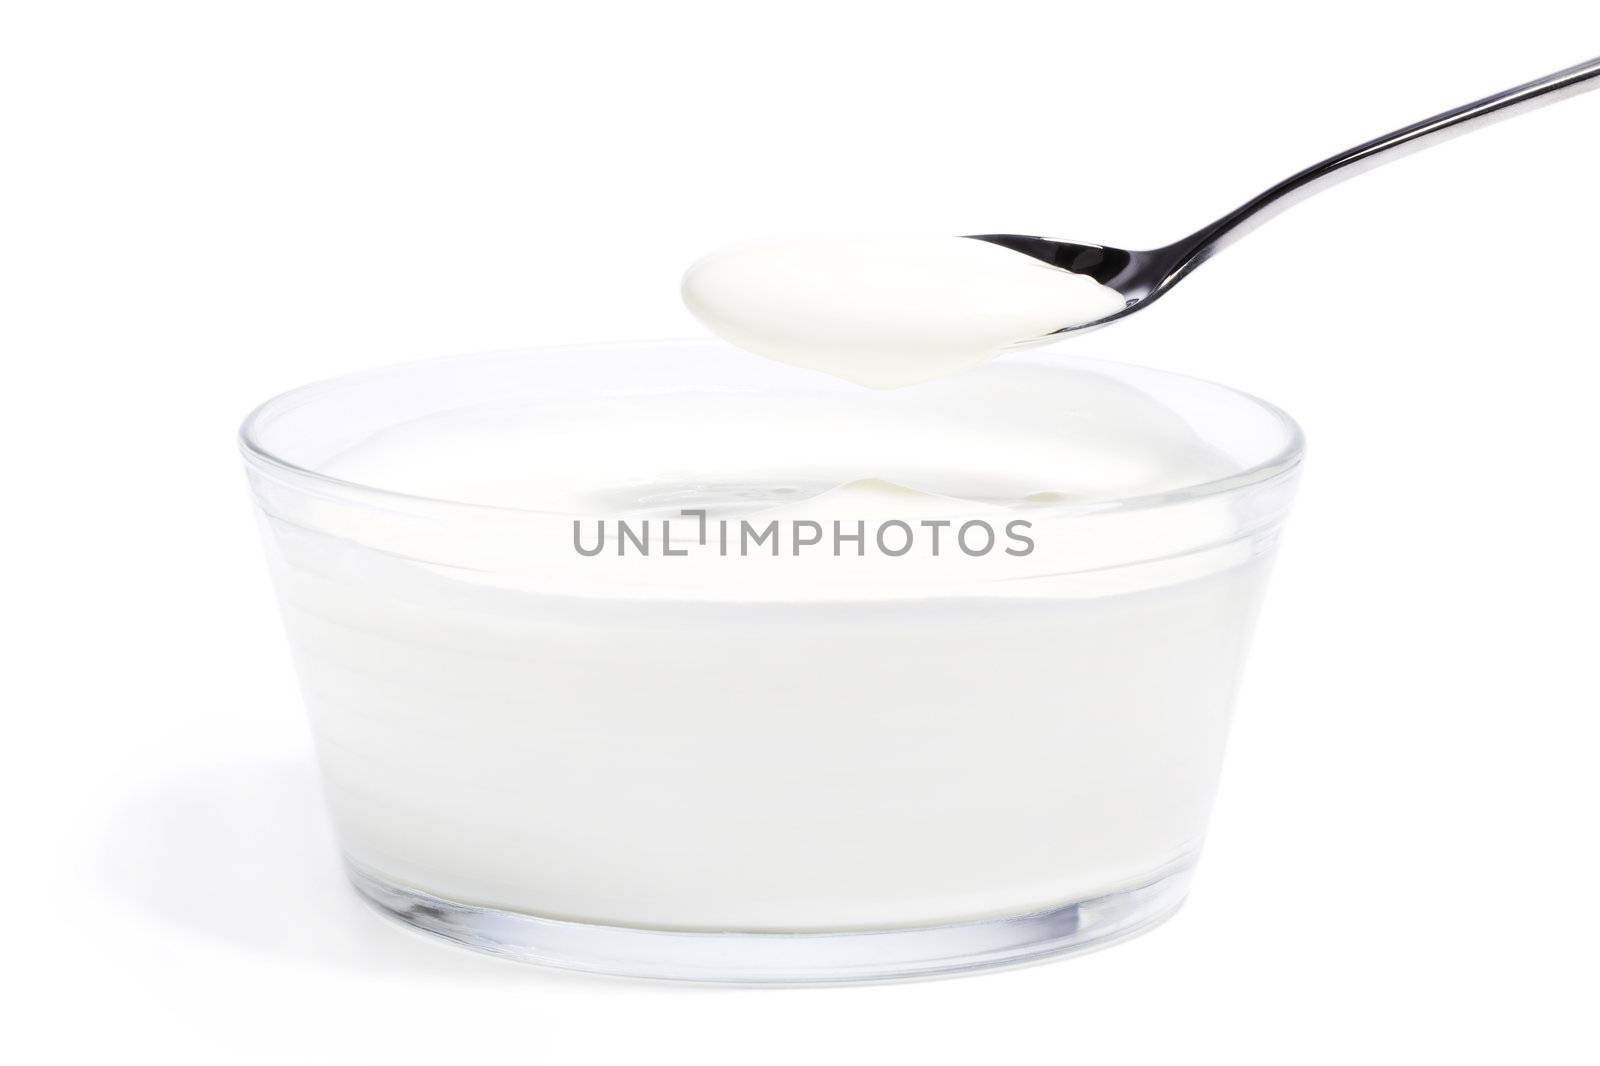 yogurt on a spoon over yogurt in a glass bowl by RobStark